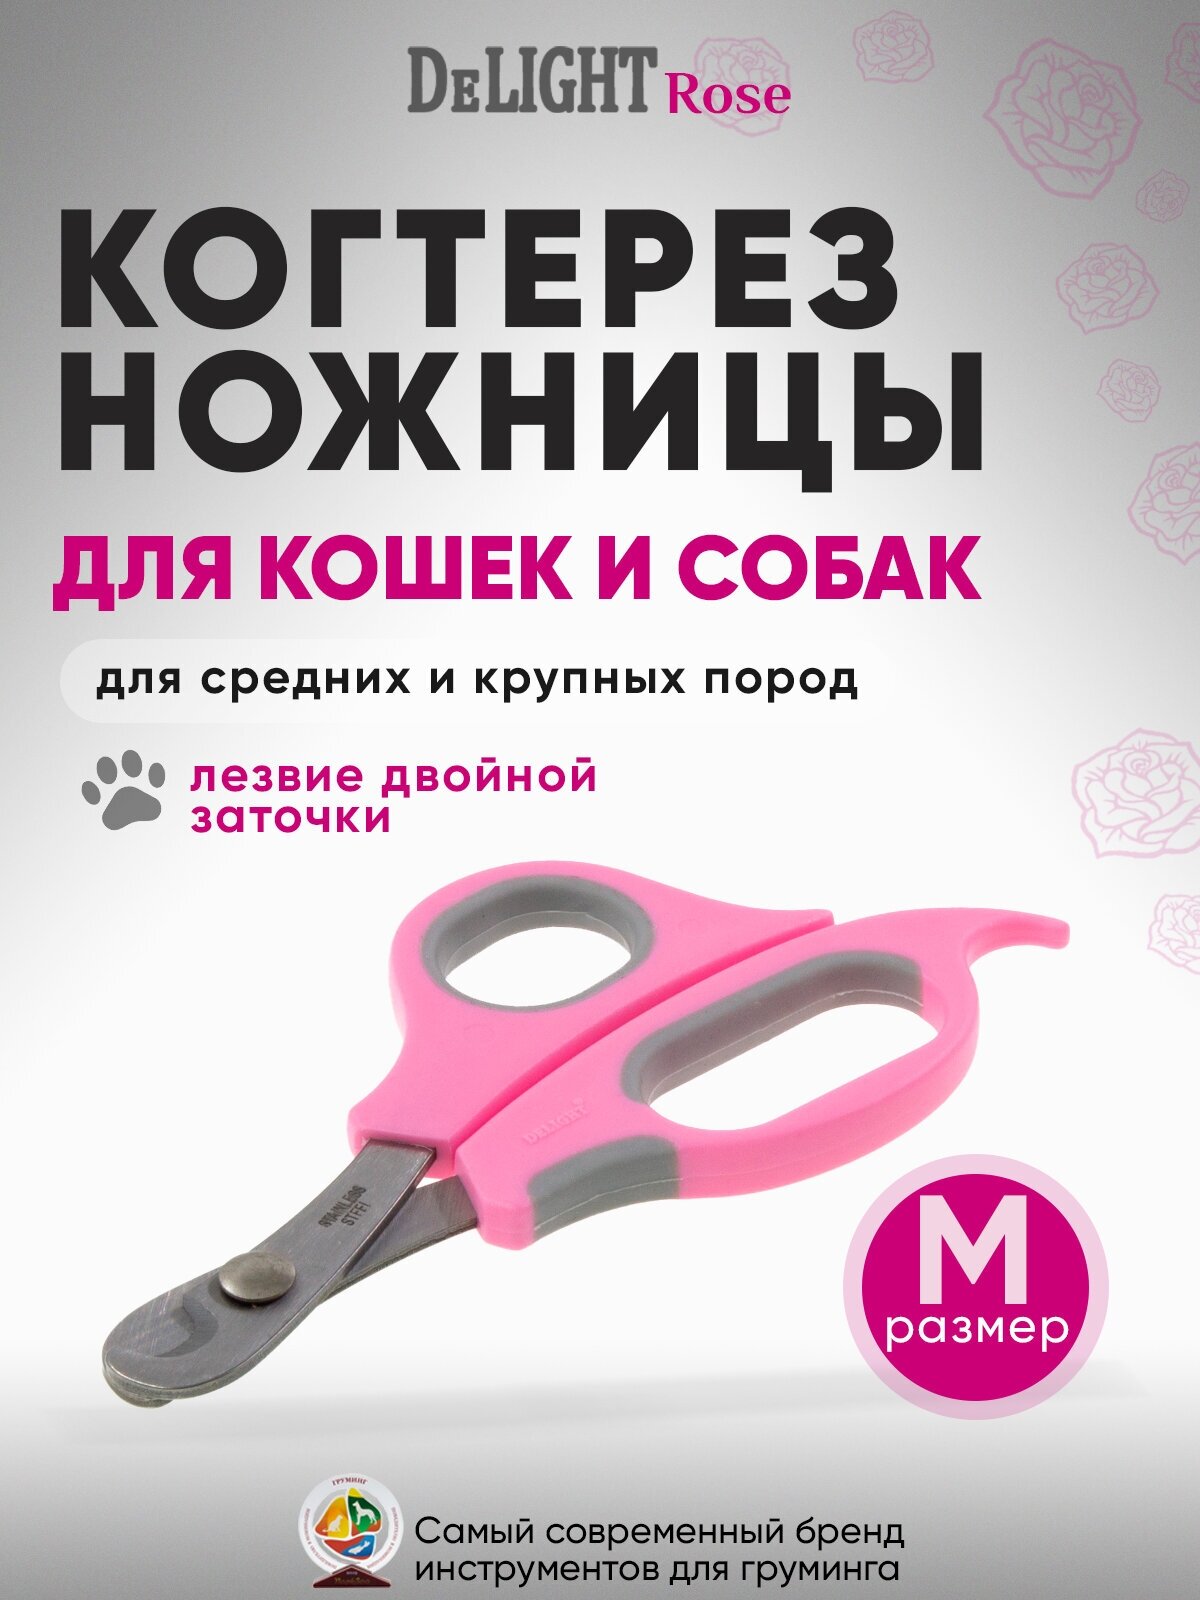 Когтерез-ножницы для кошек и собак малых и средних пород DeLIGHT ROSE, средний (M), с упором, прямой, розовый, серый, 3908R